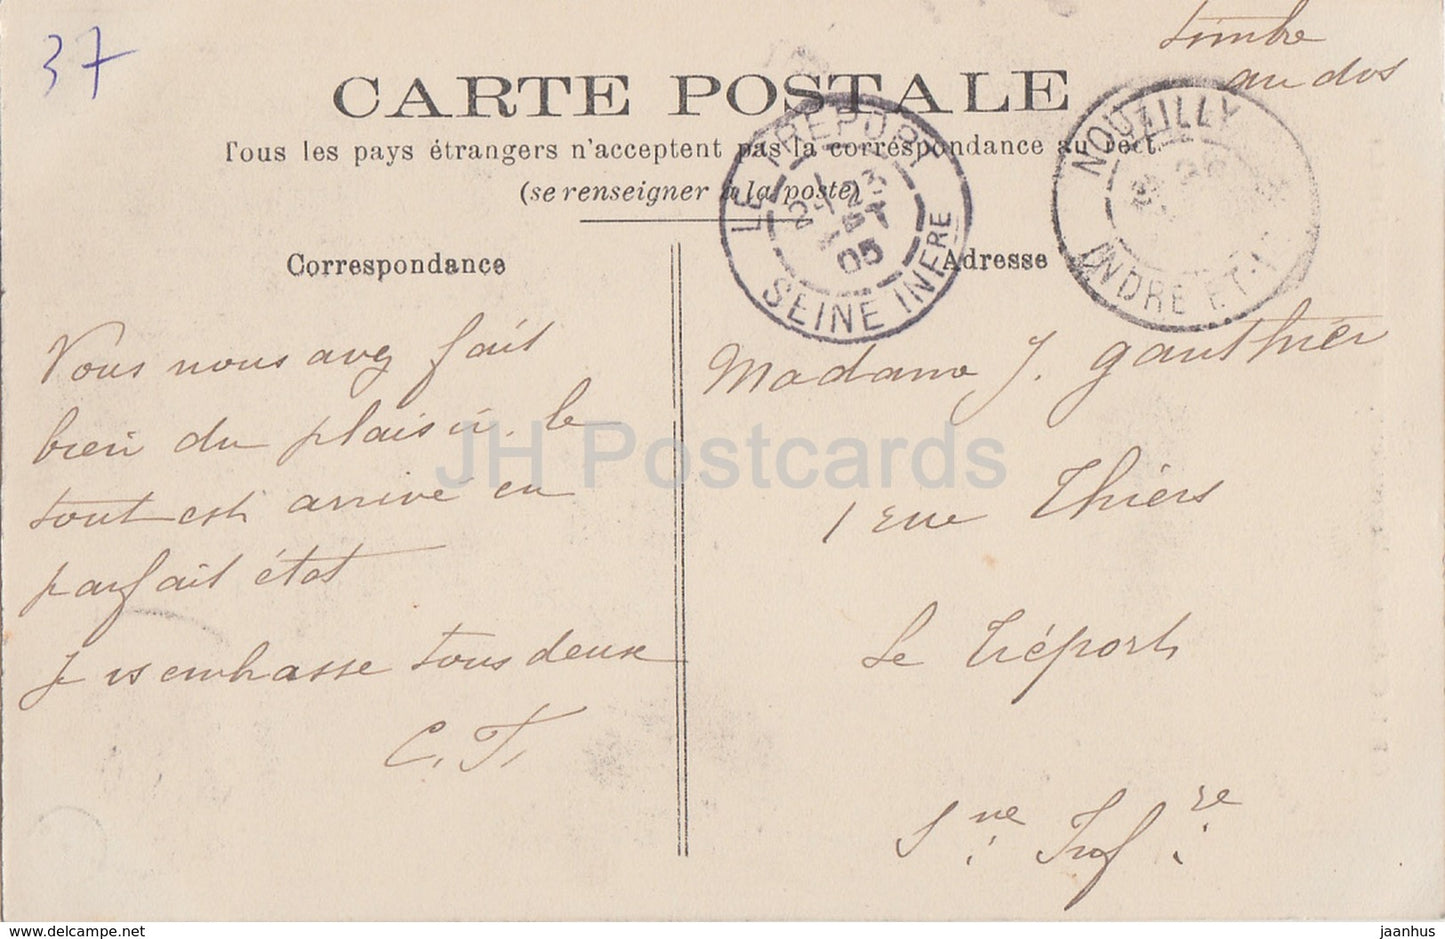 Château de Moncontour - par Vouvray - château - 1 - carte postale ancienne - 1905 - France - occasion